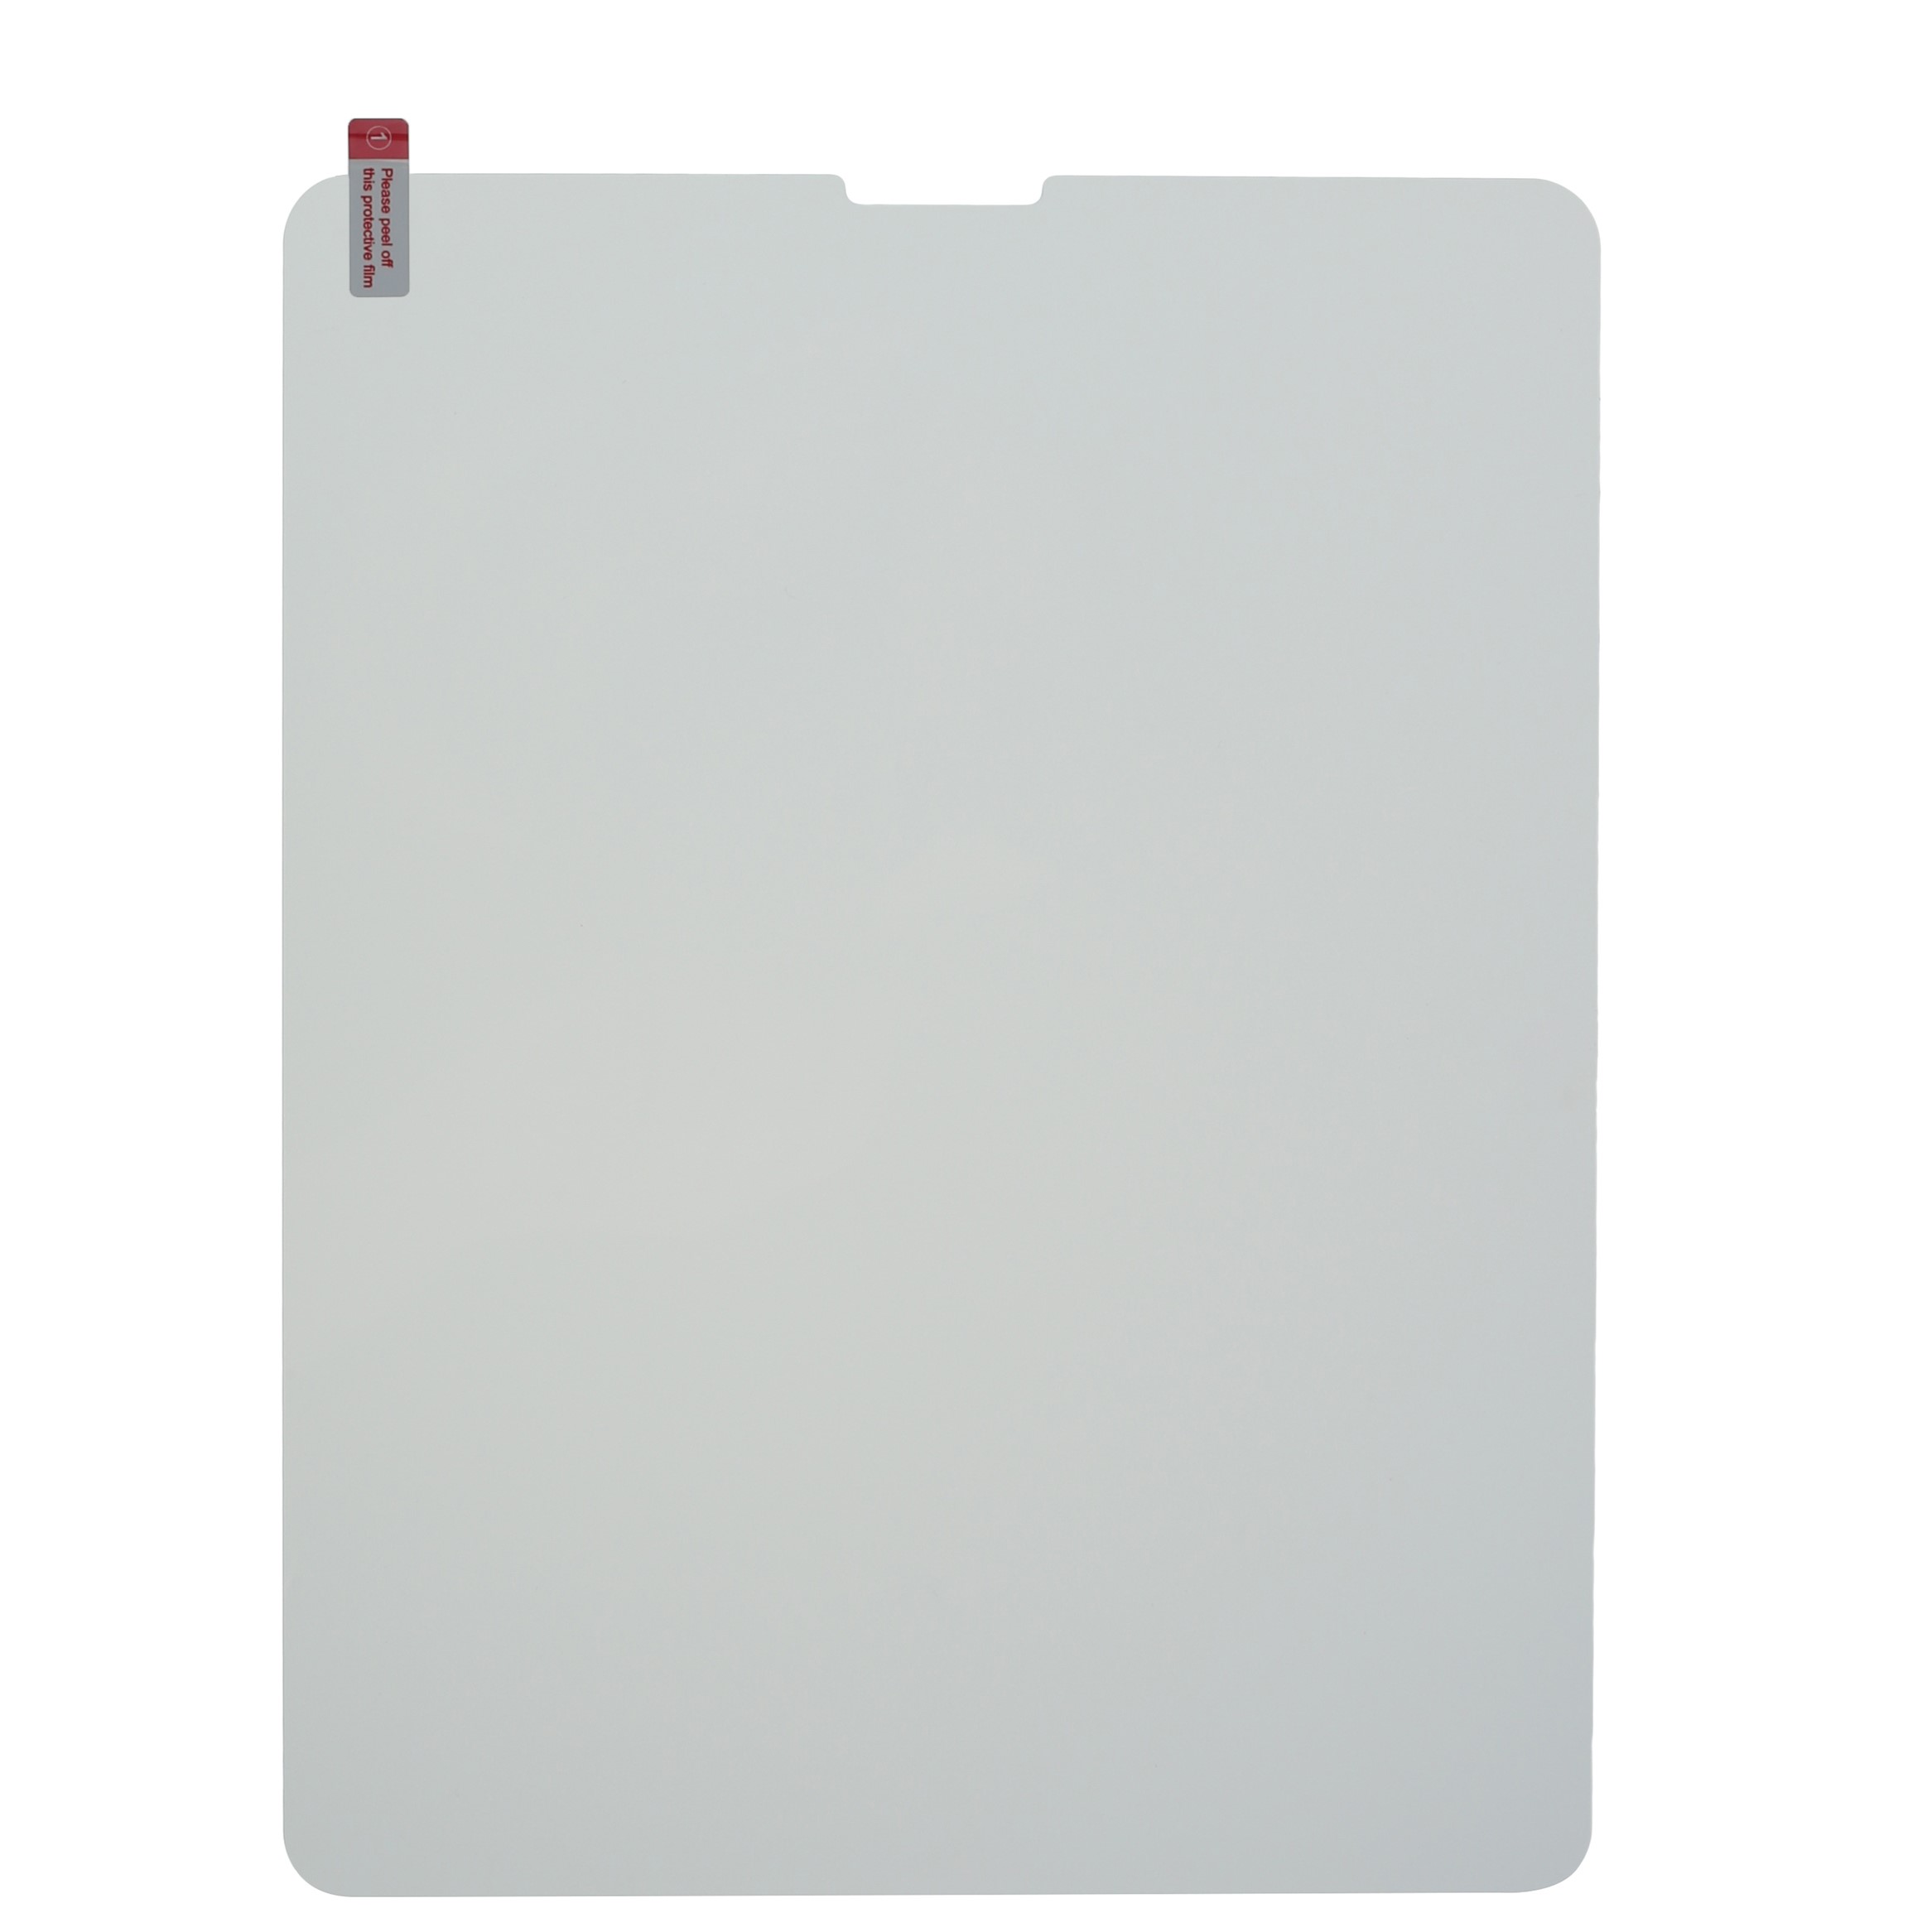 محافظ صفحه نمایش رسی مدل RSP-P13TD مناسب برای تبلت اپل iPad Pro 12.9